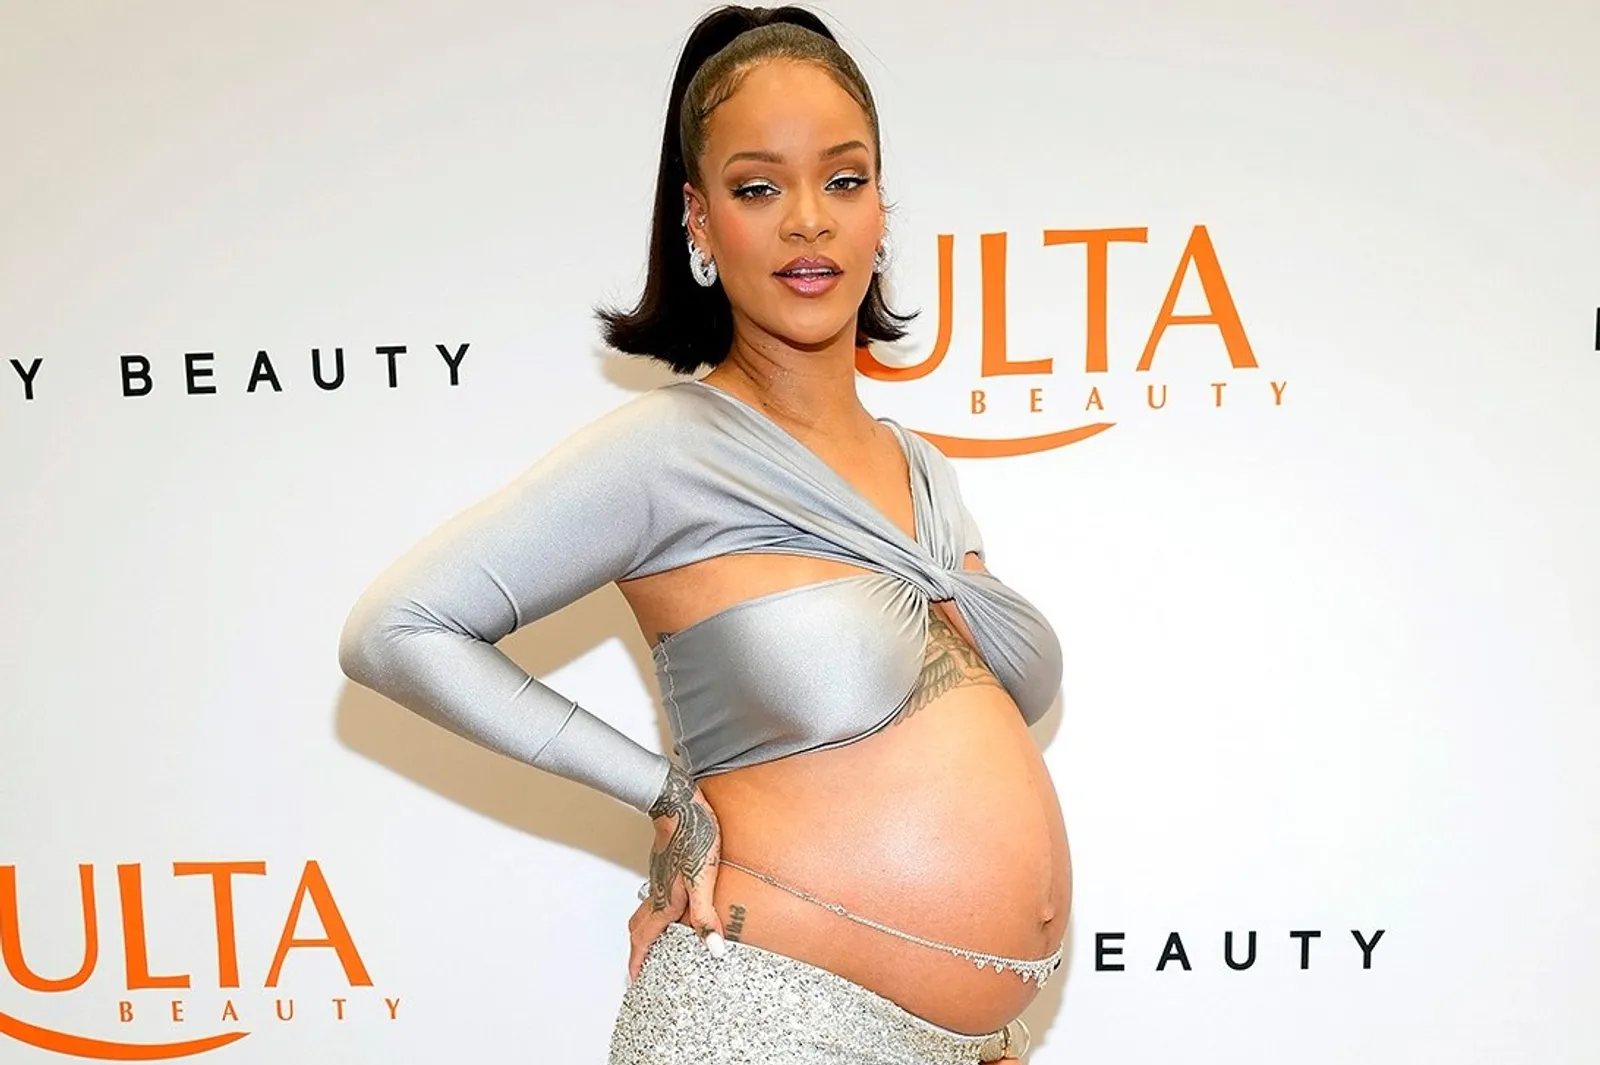 Gaya Seksi Rihanna Ekspos Kehamilan di Acara Fenty Beauty